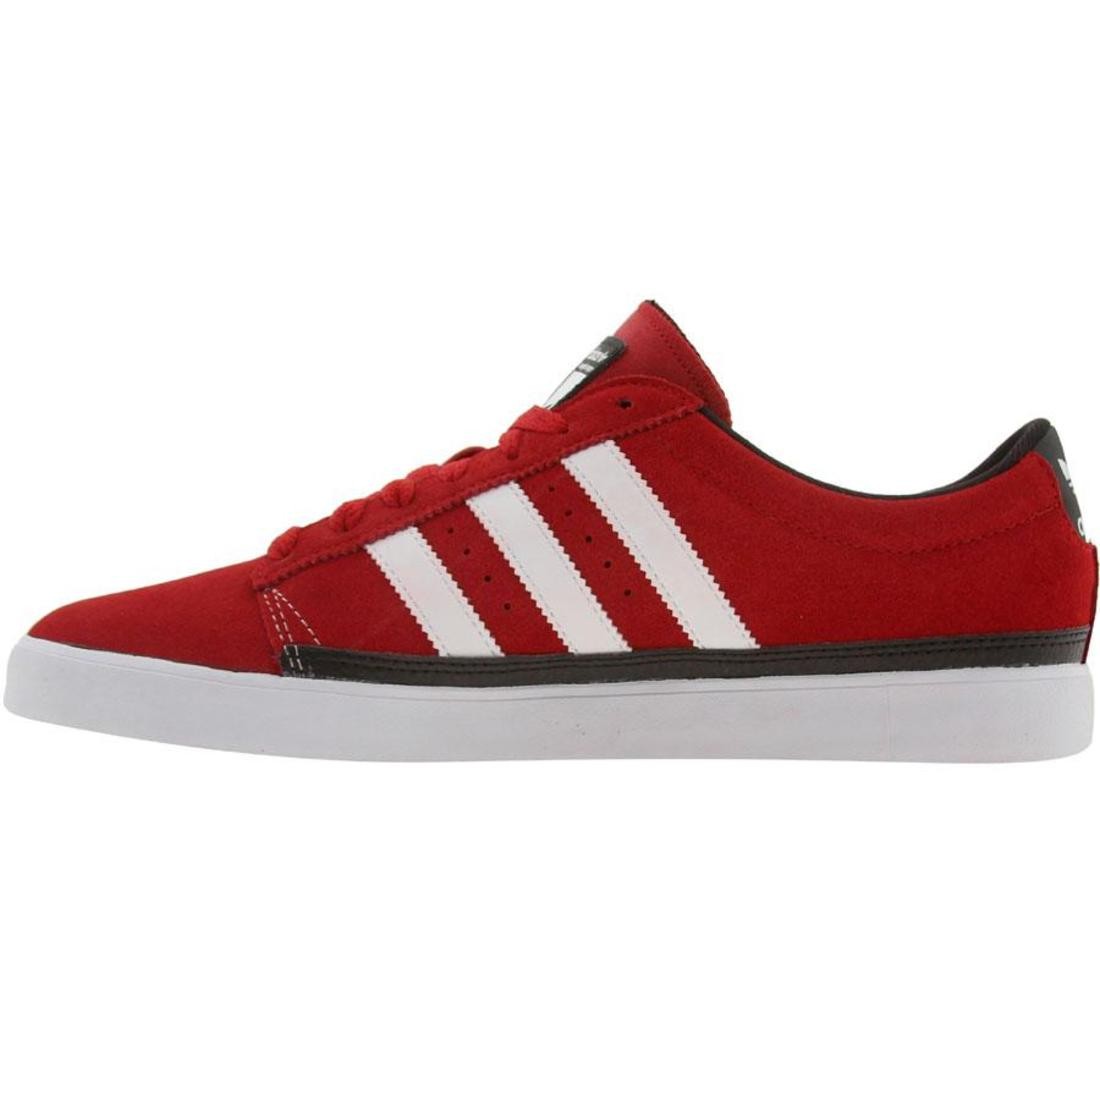 Adidas Rayado Low (university red / /